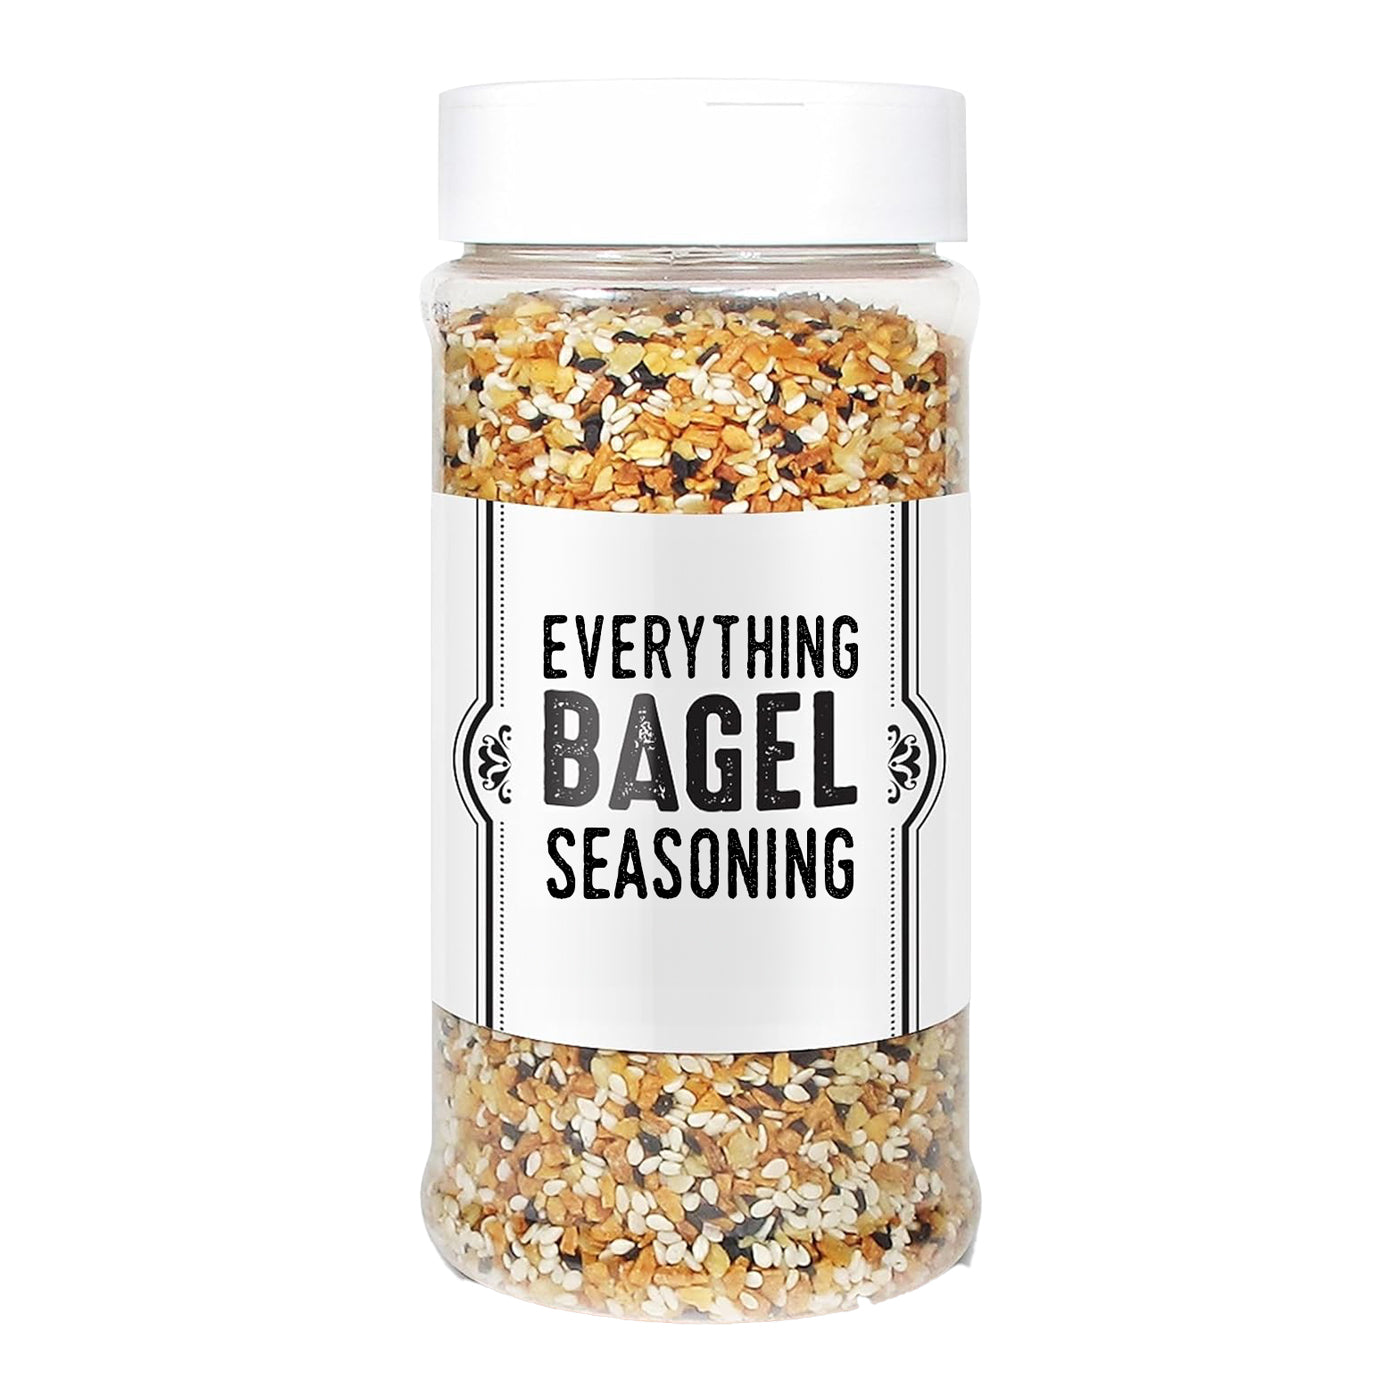 FREE Everything Bagel Seasoning